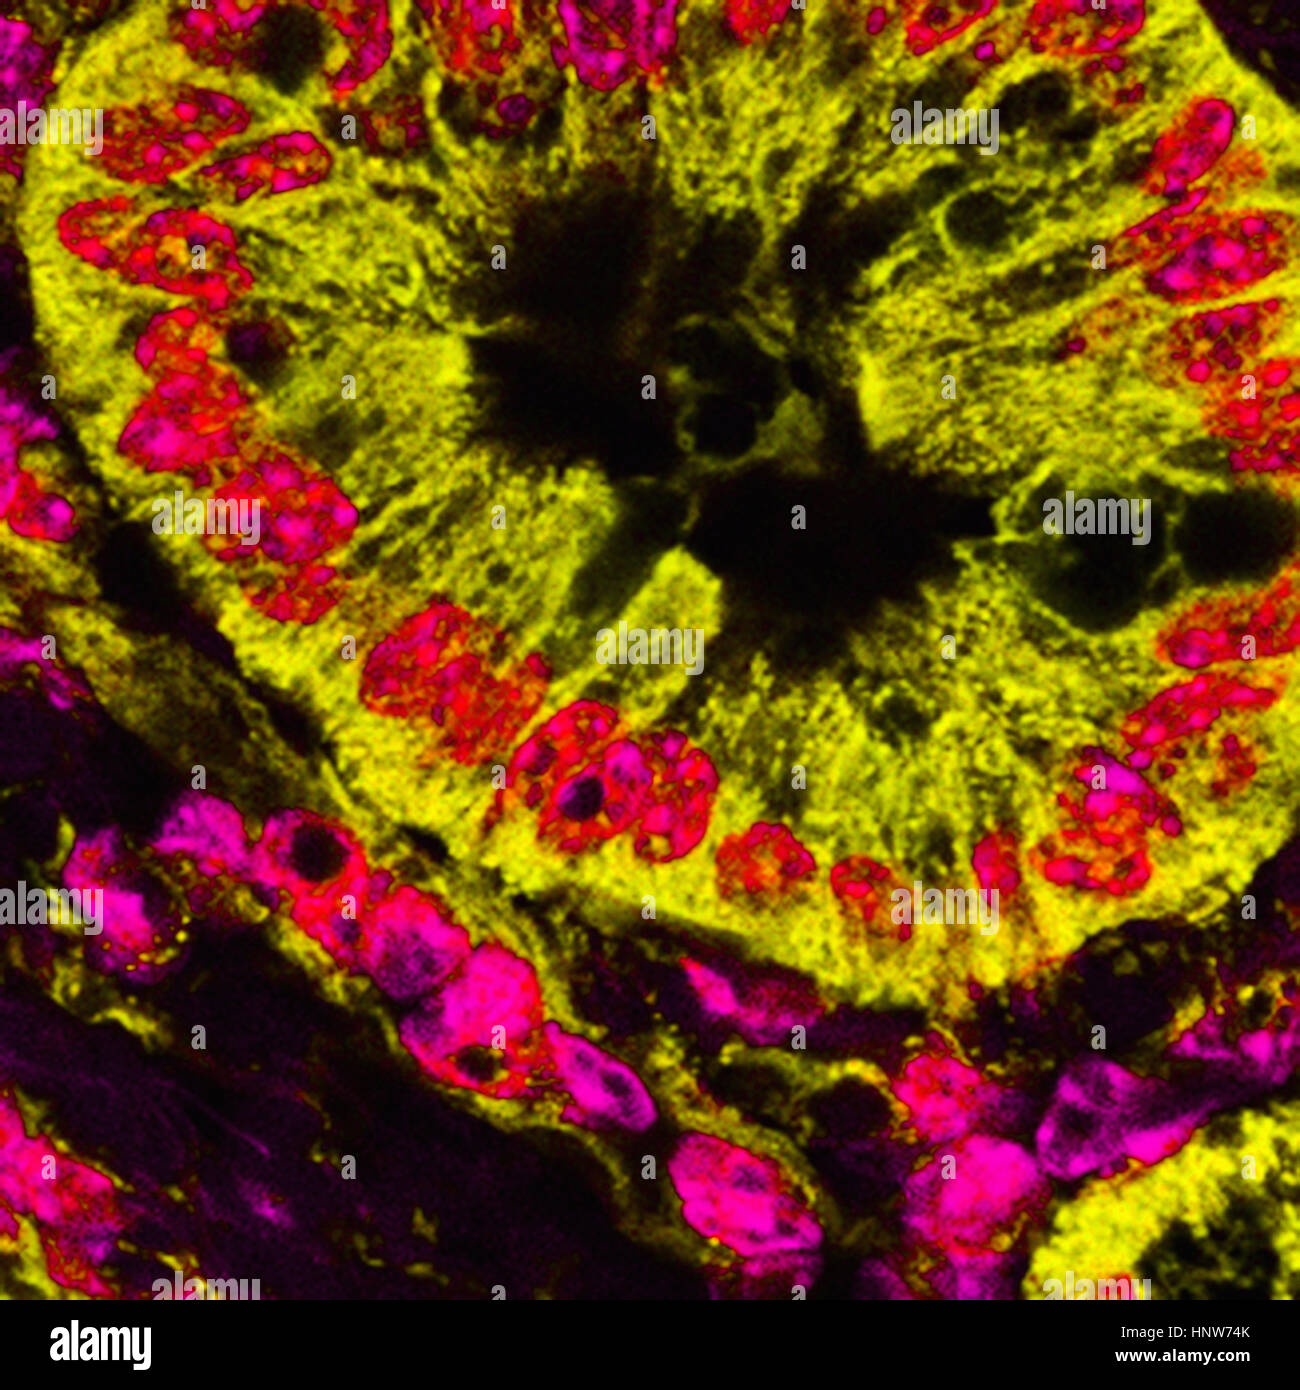 Mikroskopische Bild der mitochondrialen gefärbten pankreatischen Krebszellen Stockfoto